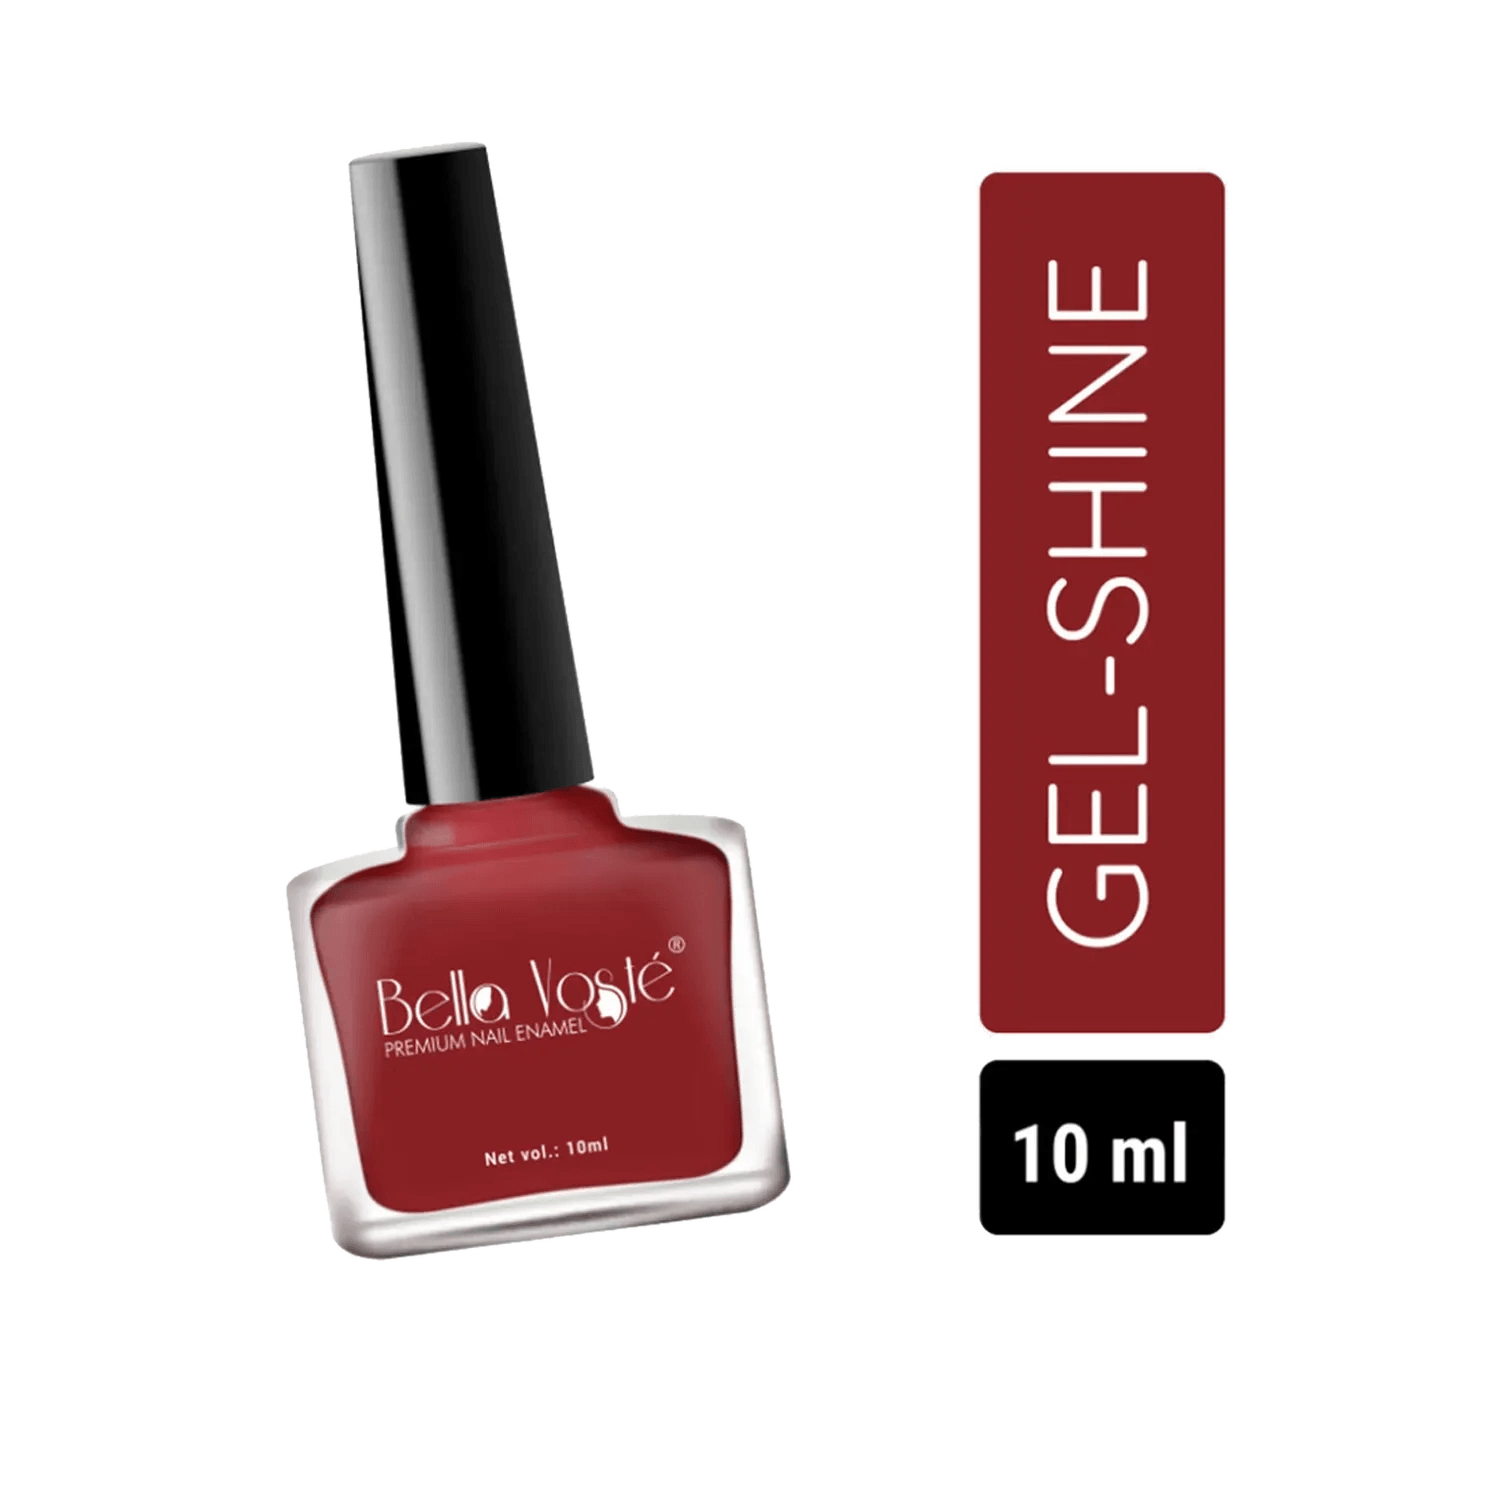 Bella Voste | Bella Voste Gel-Shine Nail Paint - Shade 327 (10ml)